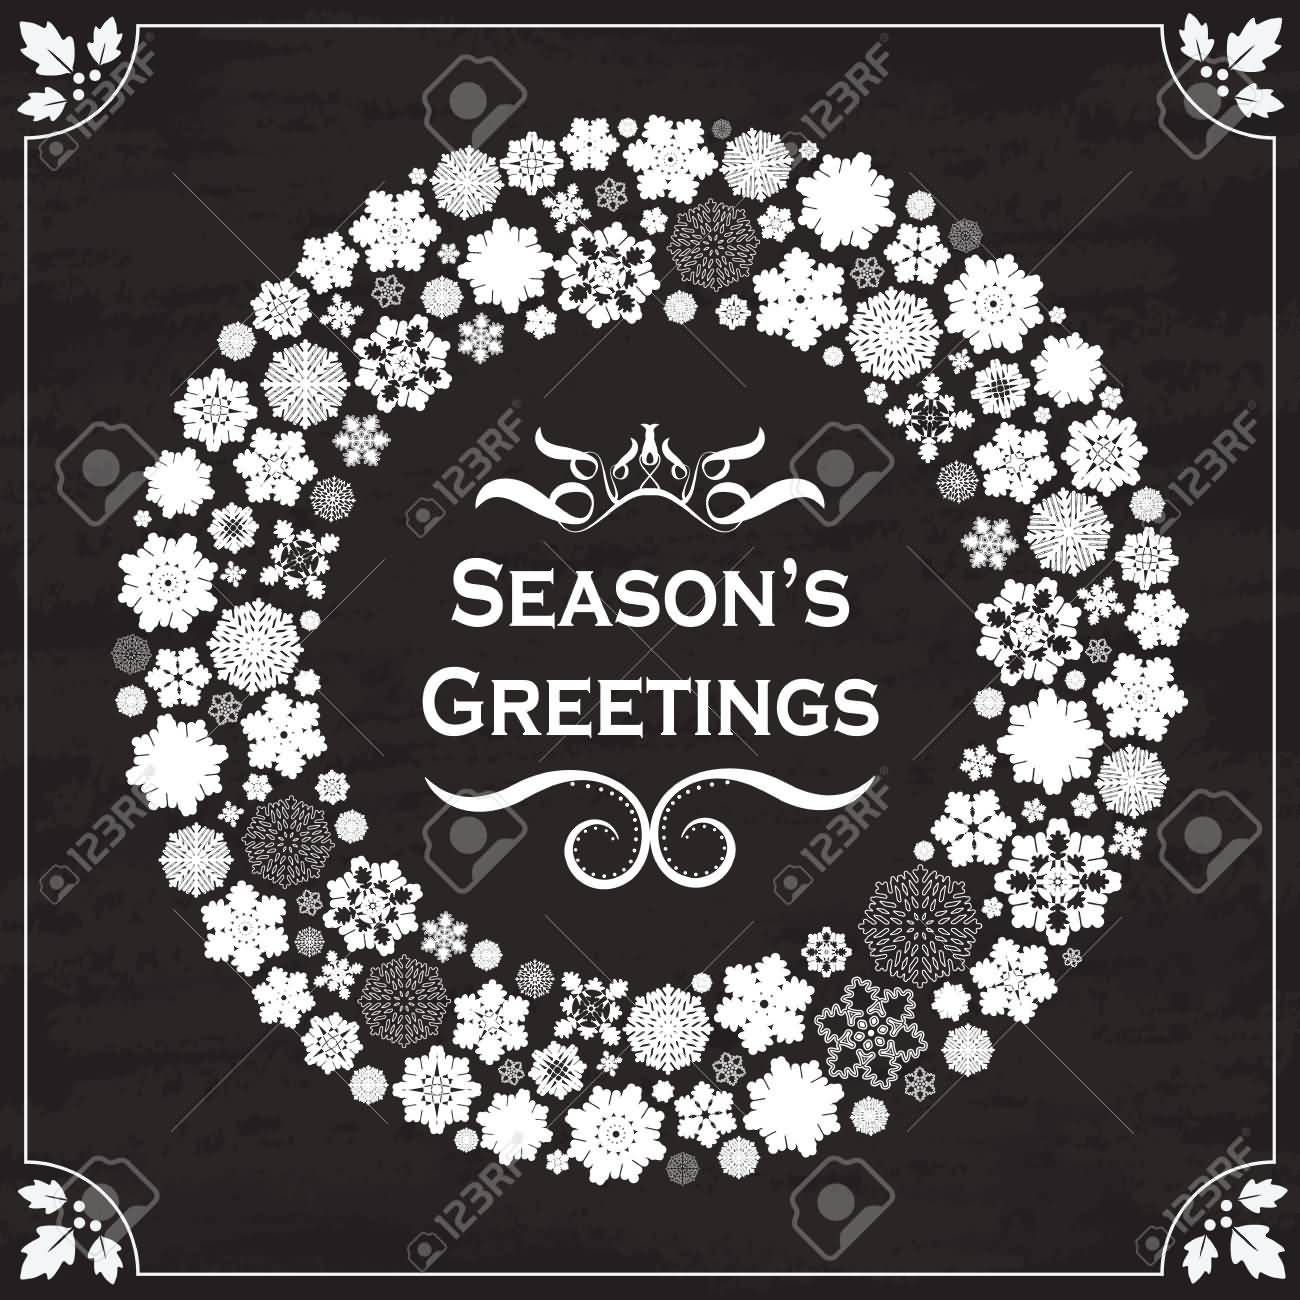 Season’s Greetings Snowflakes Border On Chalkboad